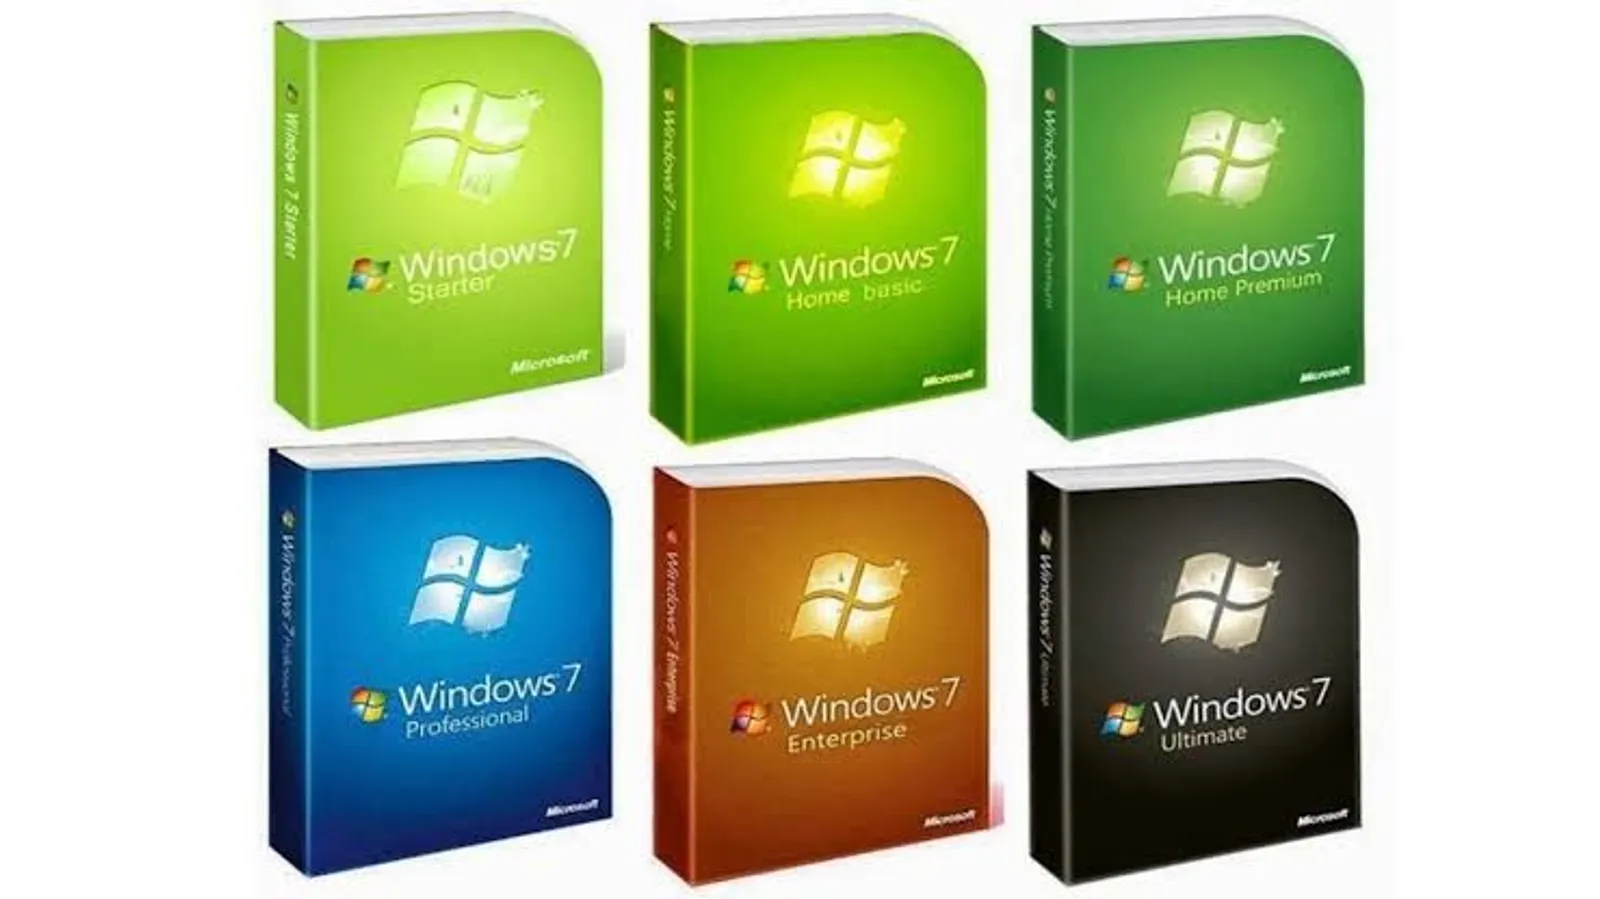 Masih Punya Banyak Pengguna Setia, Ini 7 Fakta Menarik Windows 7